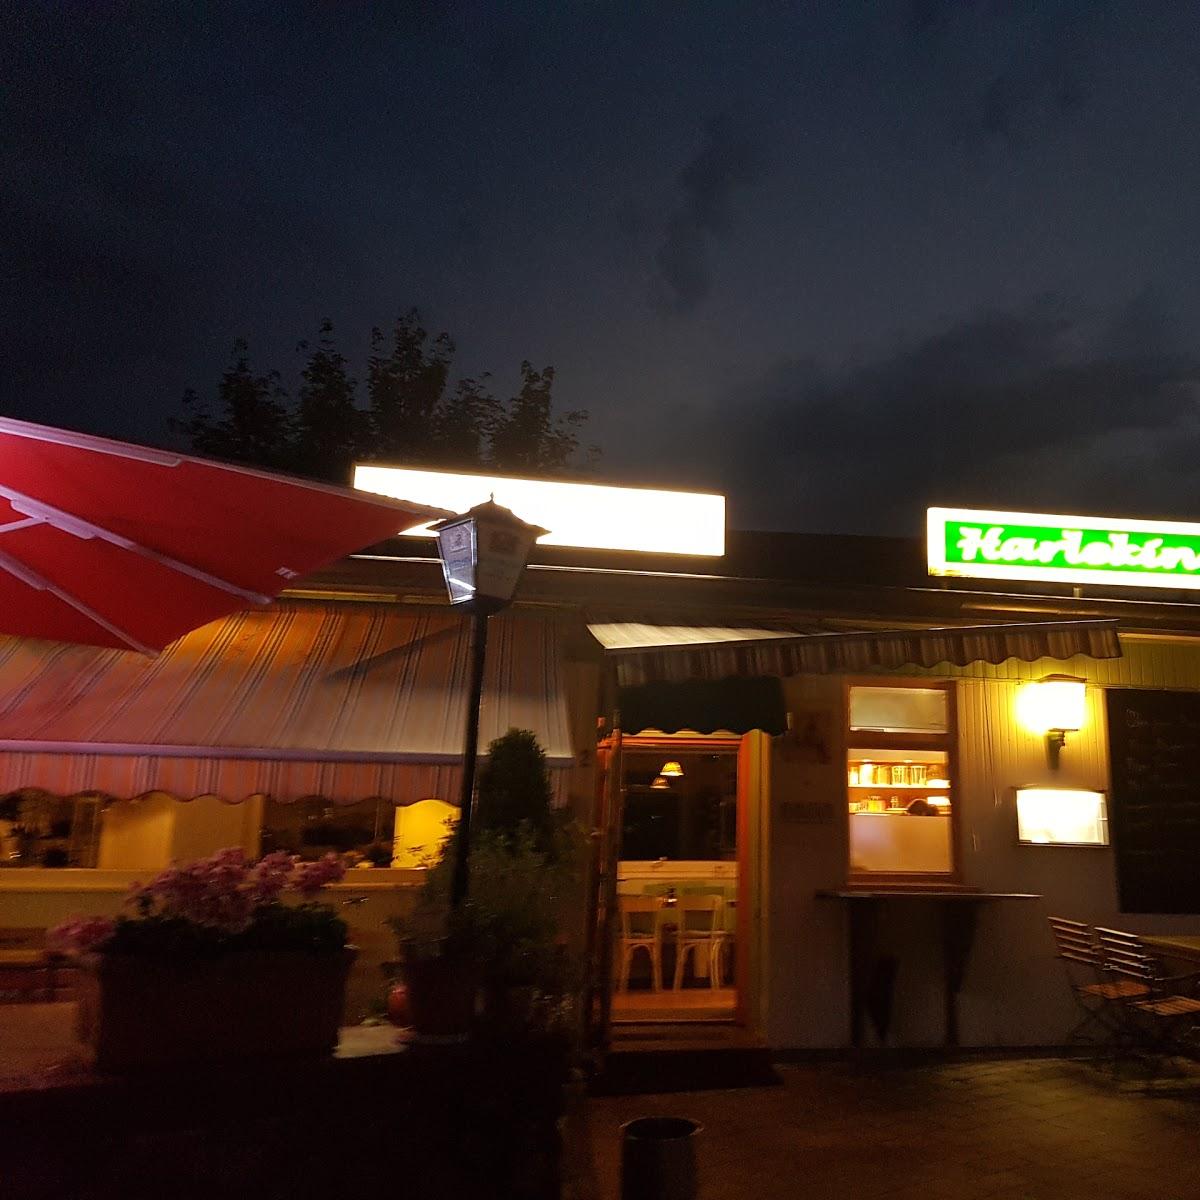 Restaurant "Harlekin - Italienisches Restaurant" in  Aumühle